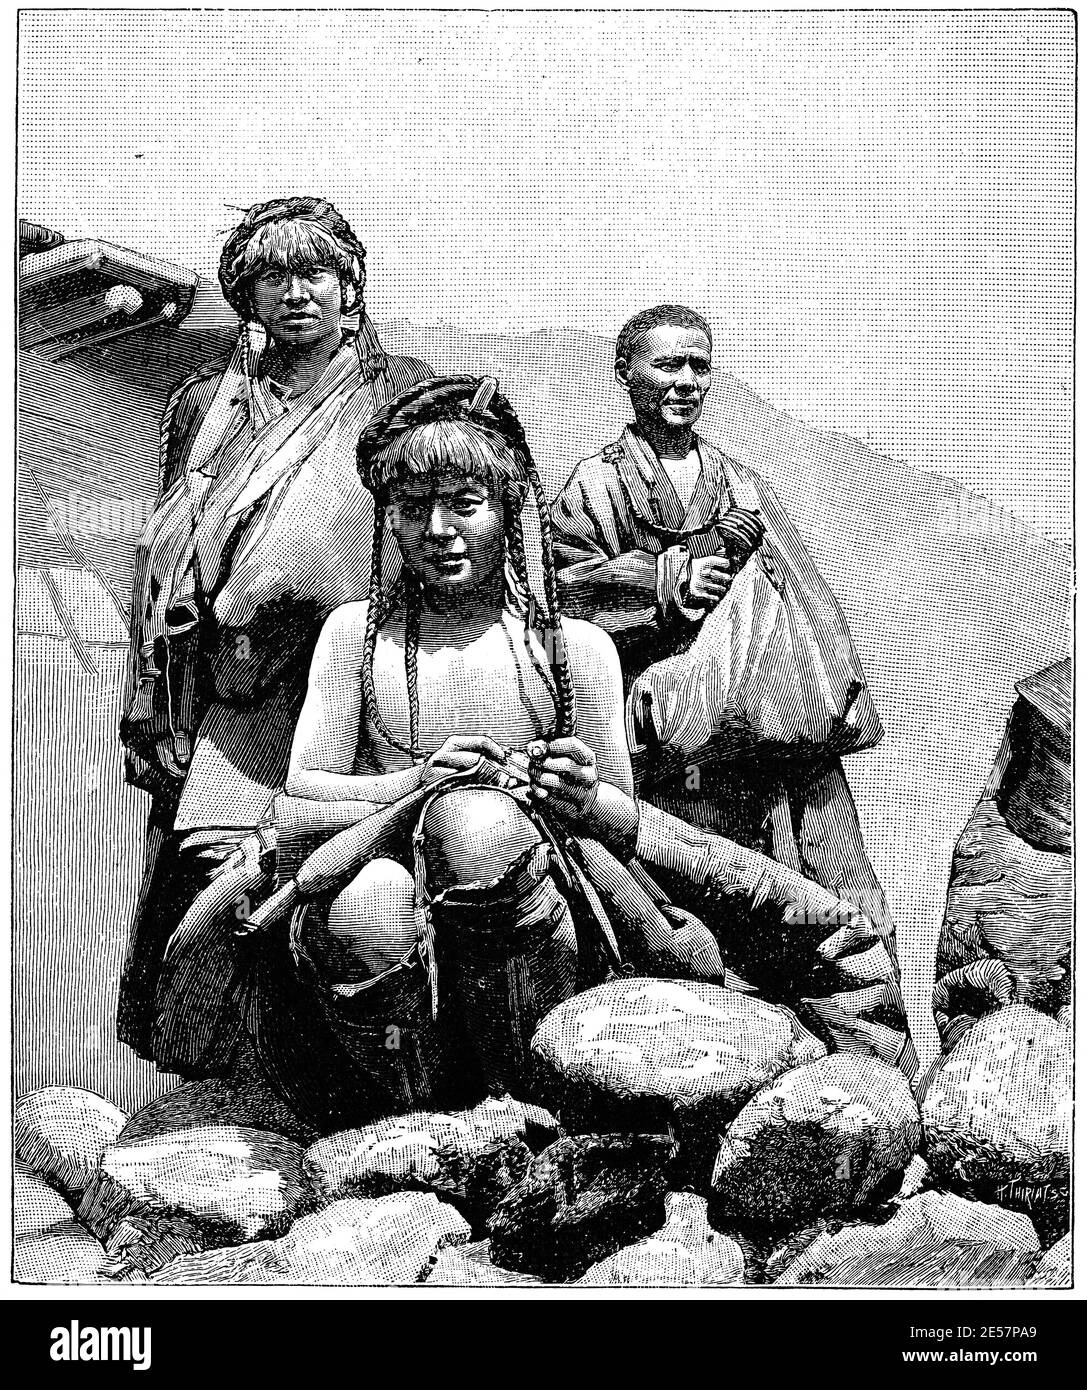 Types d'autochtones à Seresumdo, Tibet. Illustration du 19e siècle. Allemagne. Arrière-plan blanc. Banque D'Images